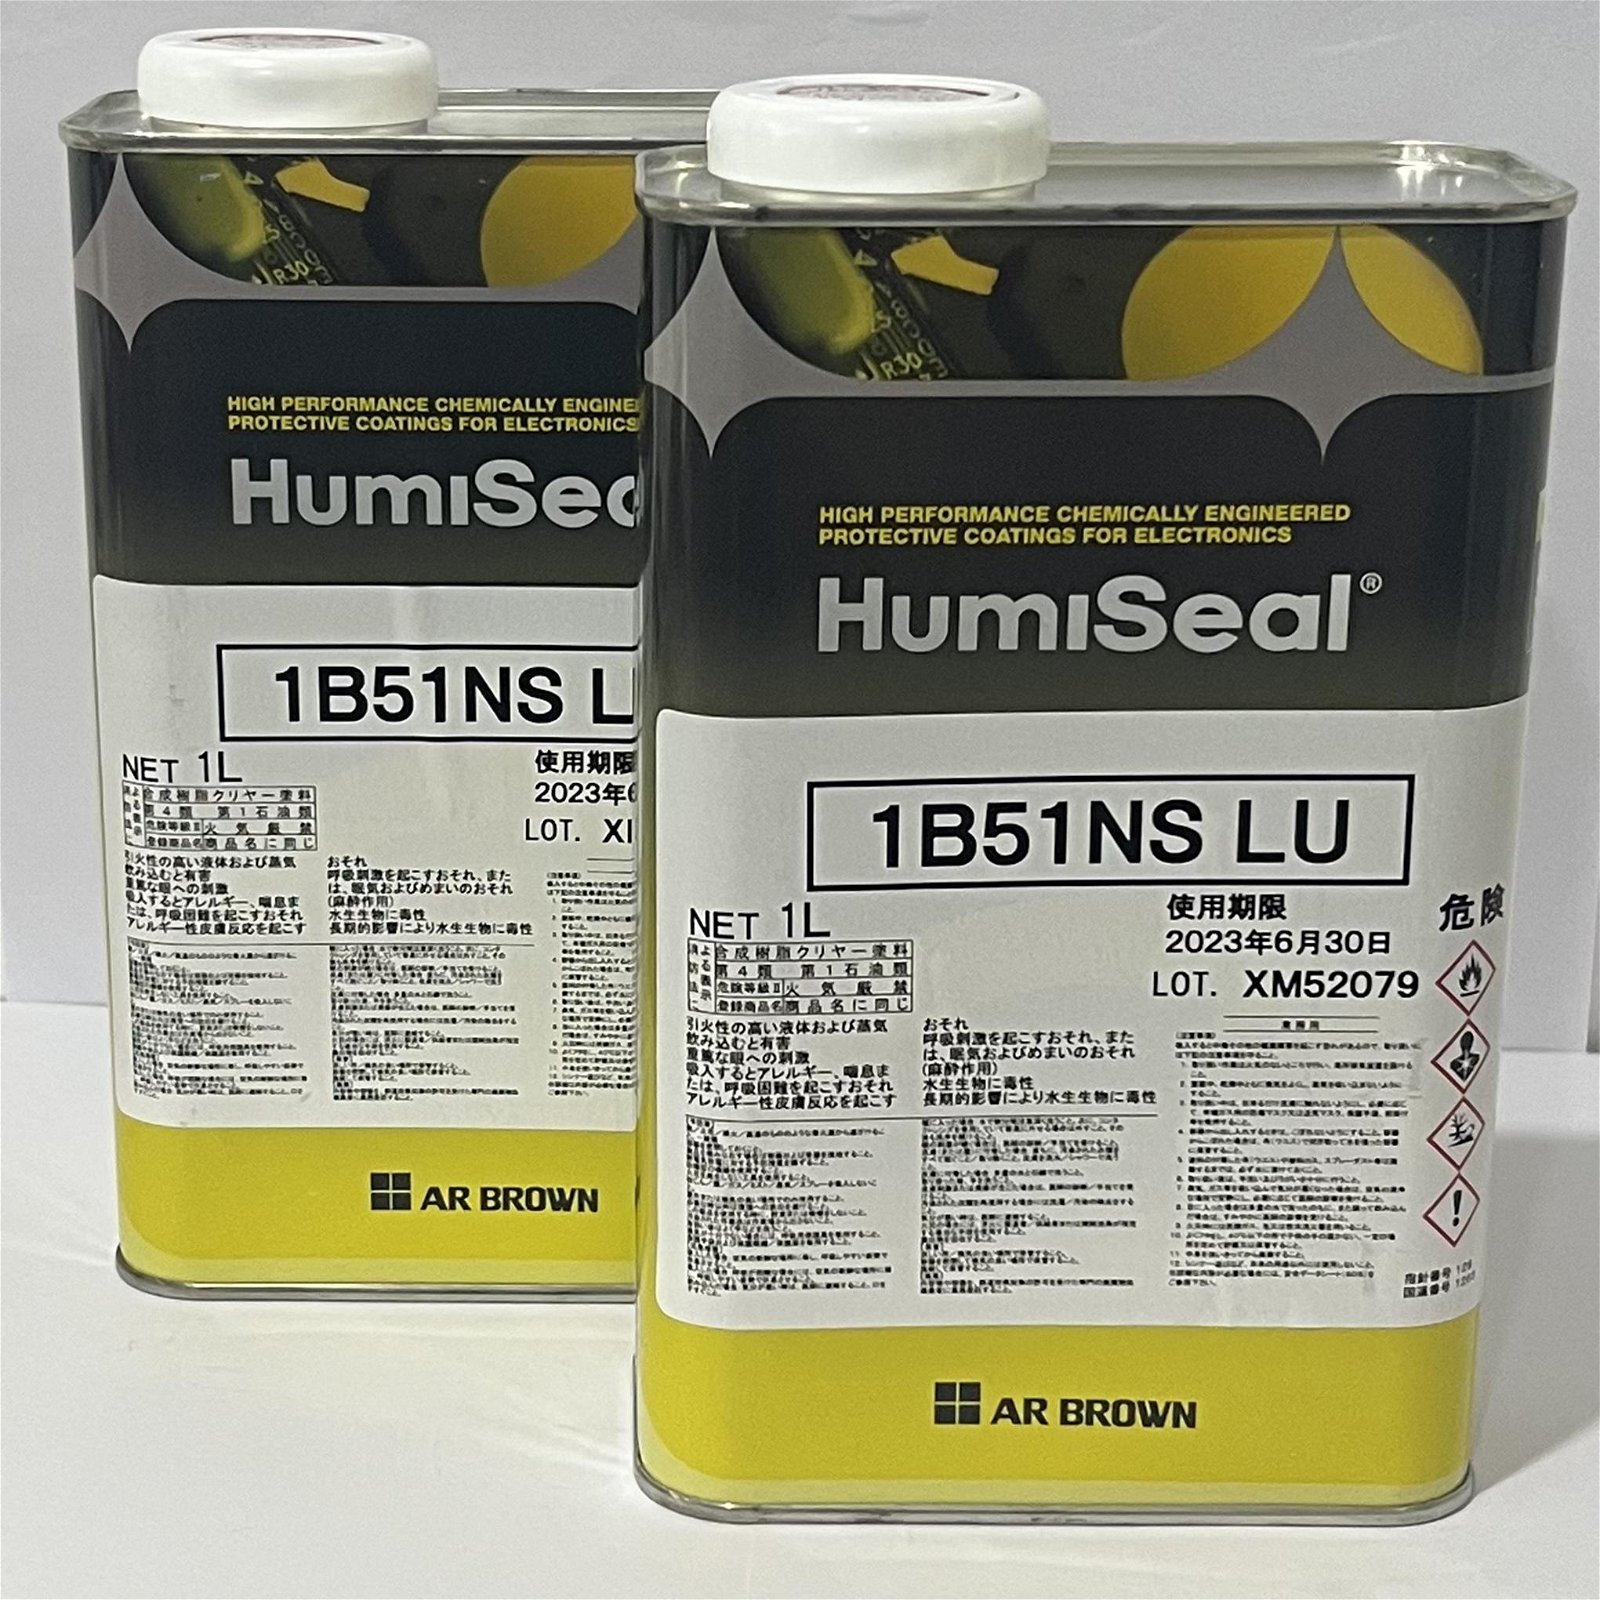 HumiSeal 1B51NS 三防漆，防濕劑，防潮漆、披覆膠、三防塗料 3